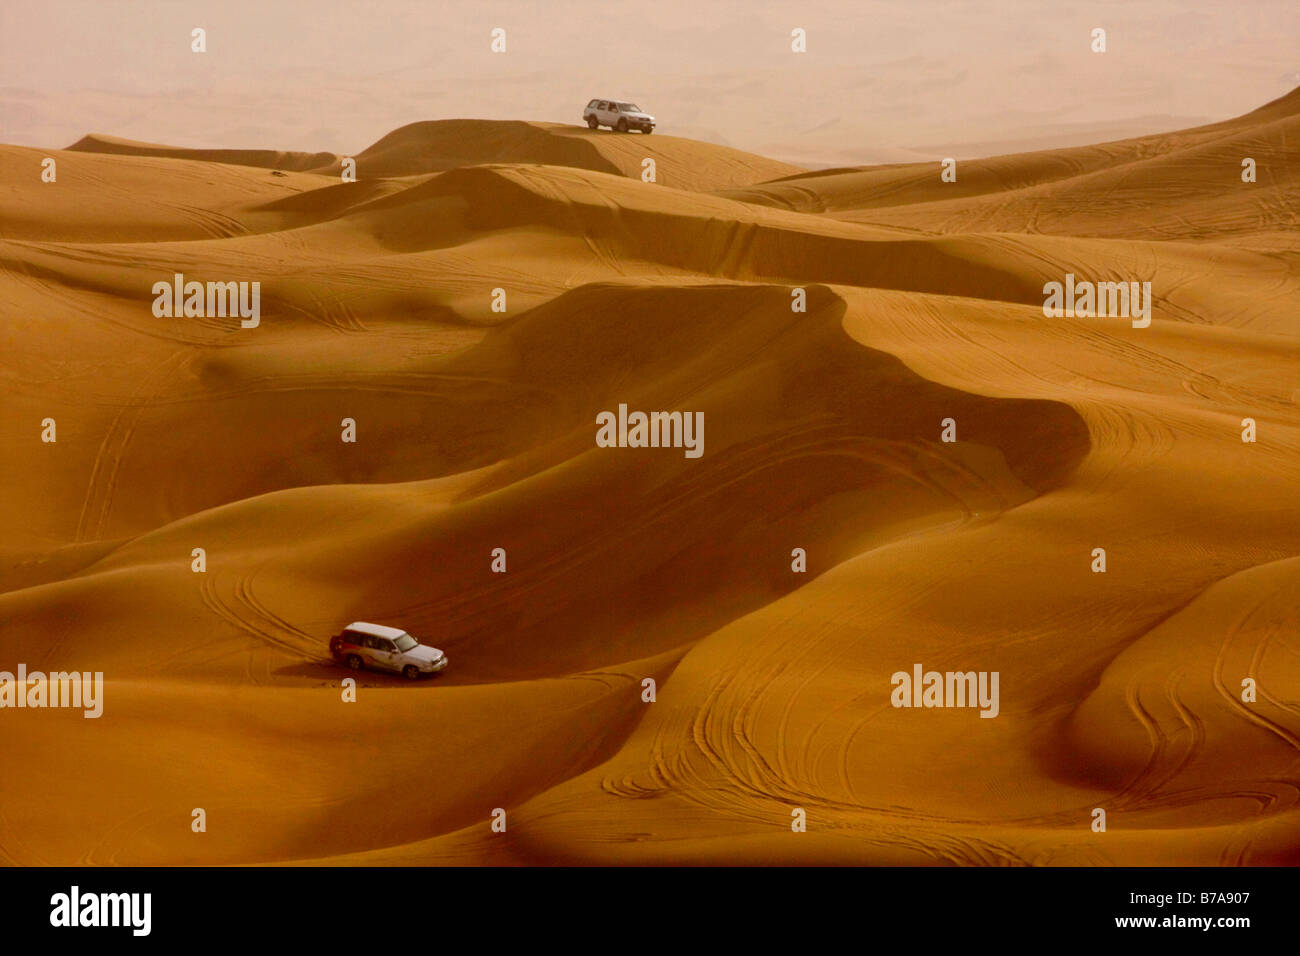 Véhicules sur les dunes de sable, safari dans le désert, Dubaï, Émirats arabes unis, Moyen Orient Banque D'Images